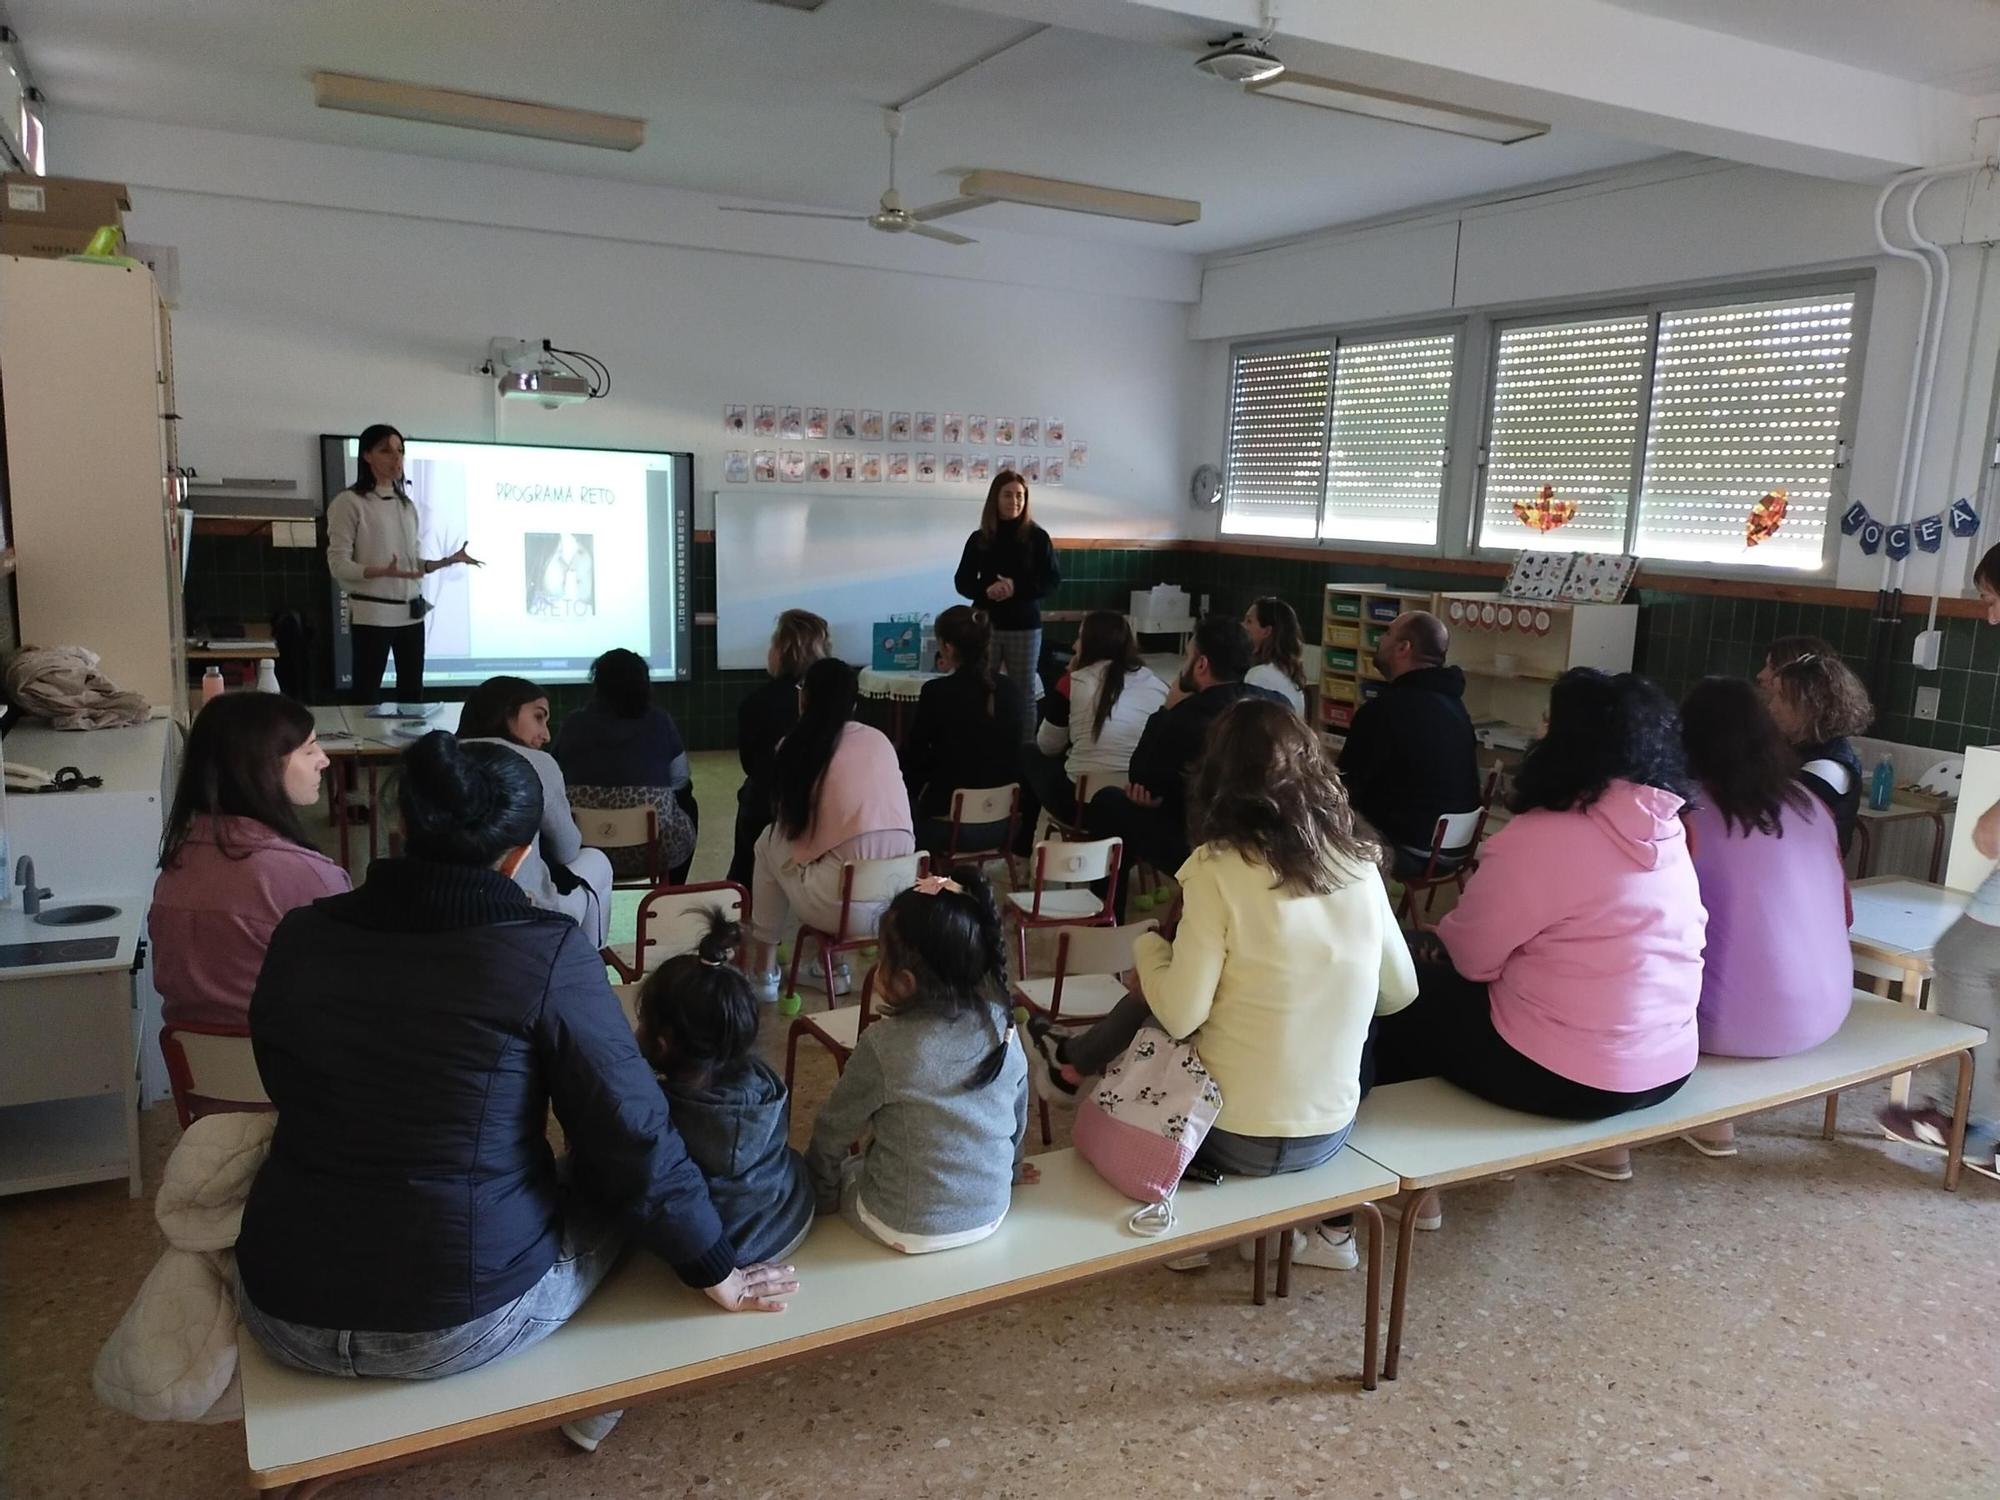 El proyecto de educación emocional Reto llega al colegio de Alfarrasí